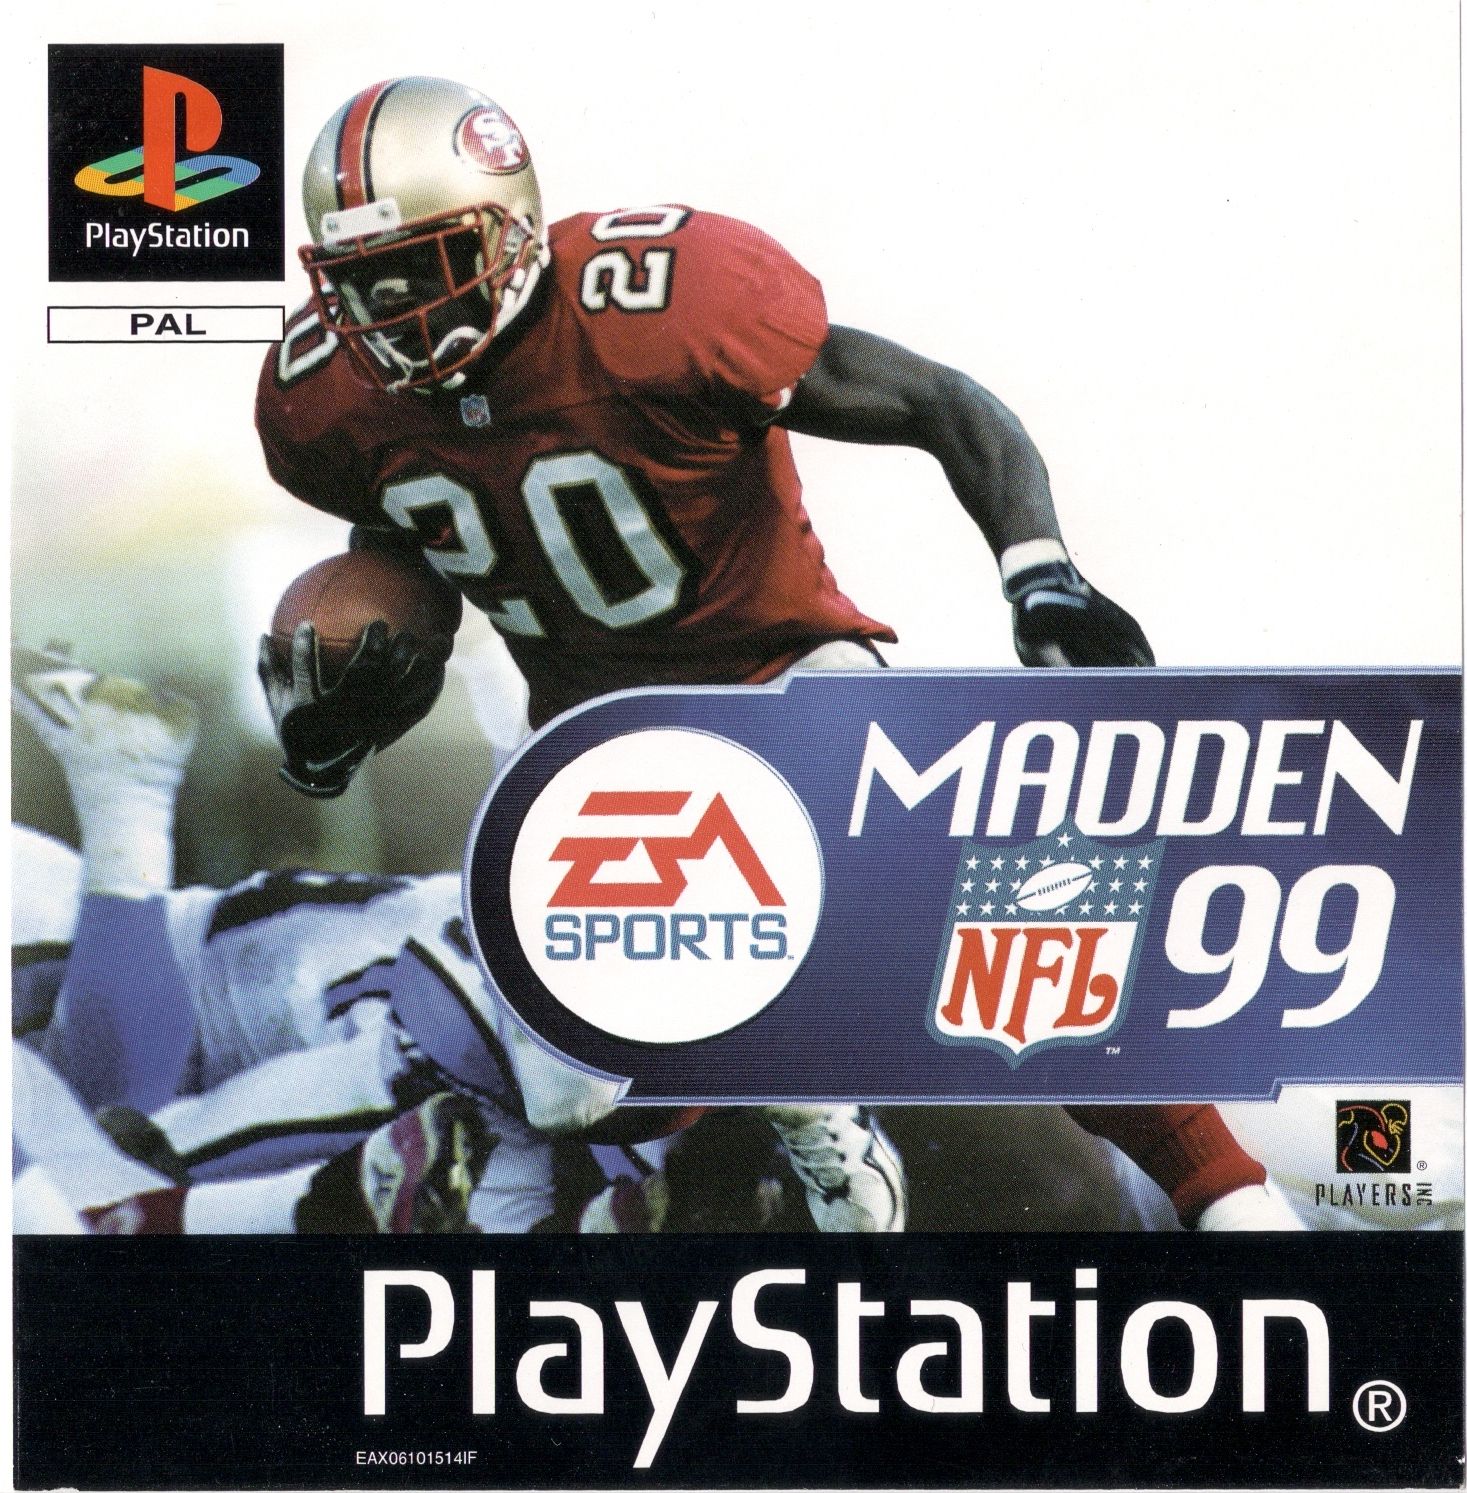 NFL Madden 99